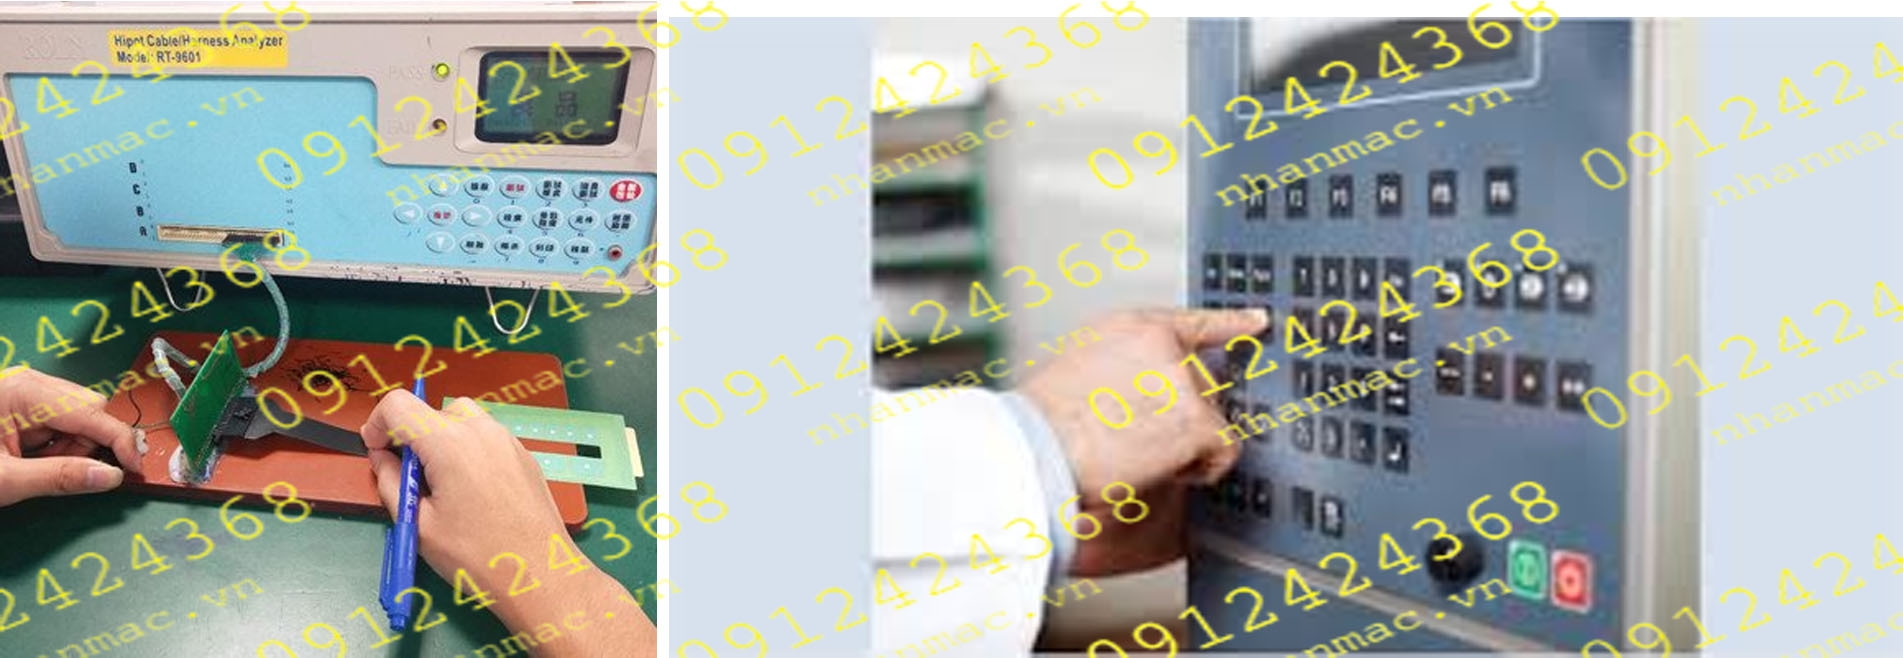 MN39- Màng nhựa nhấn nút nổi in mực dẫn điện làm bàn phím bấm khi thay thế chỉ mất chưa đầy 10 phút làm việc của người kĩ thuật viên